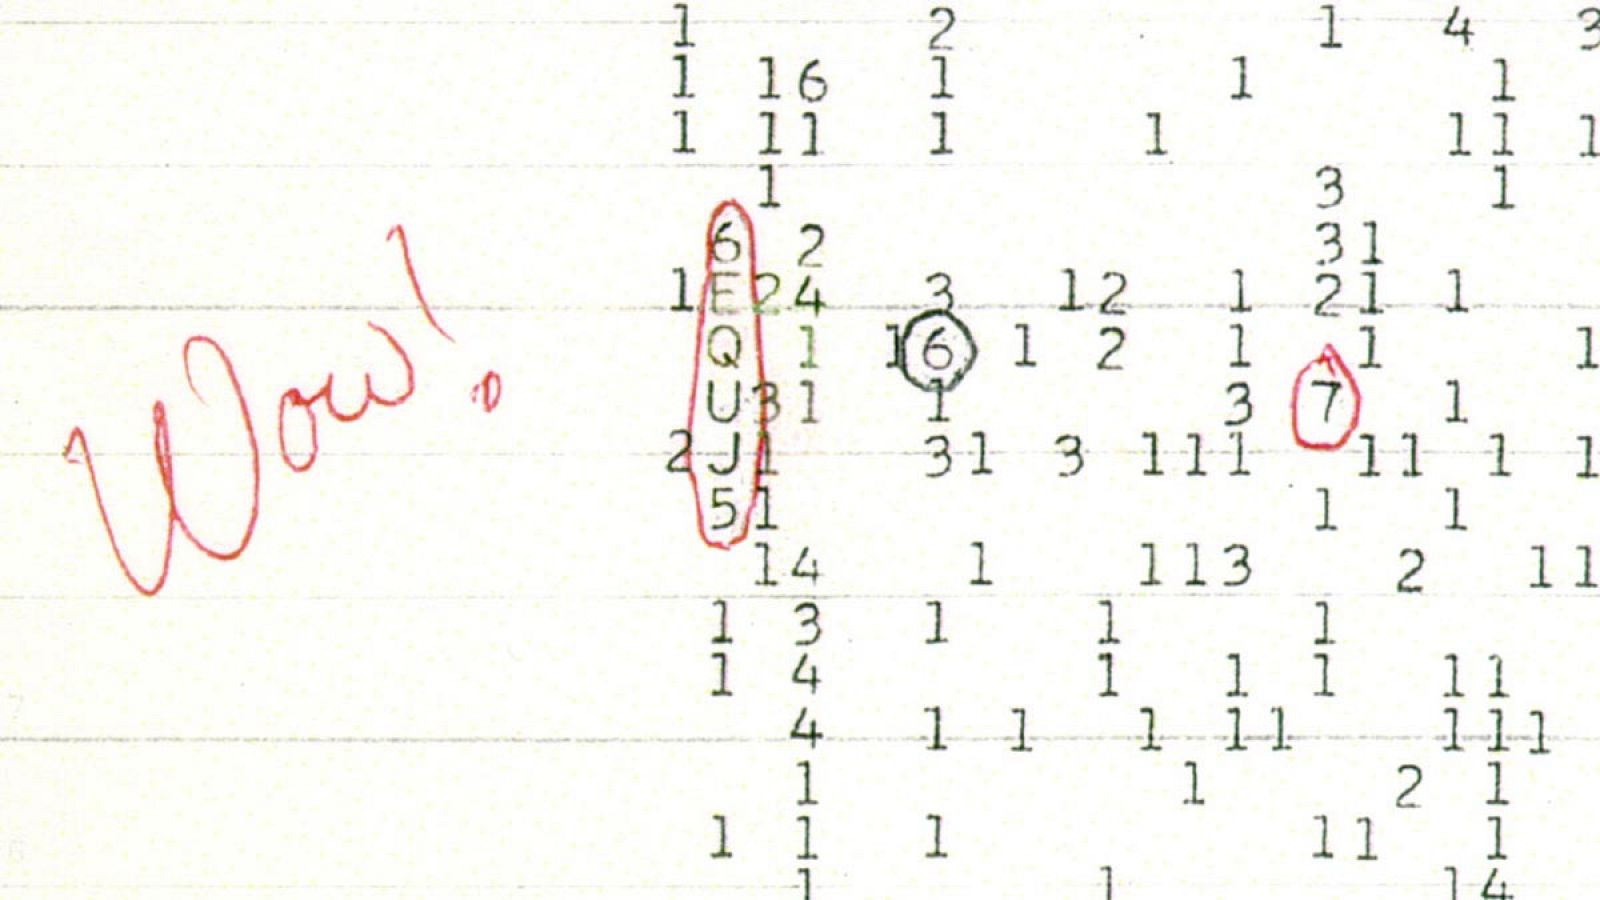 Debido a la sorpresa que le produjo, el astrónomo que descubrió la señal anotó la palabra 'Wow!' en una hoja de papel y dio el nombre al fenómeno.